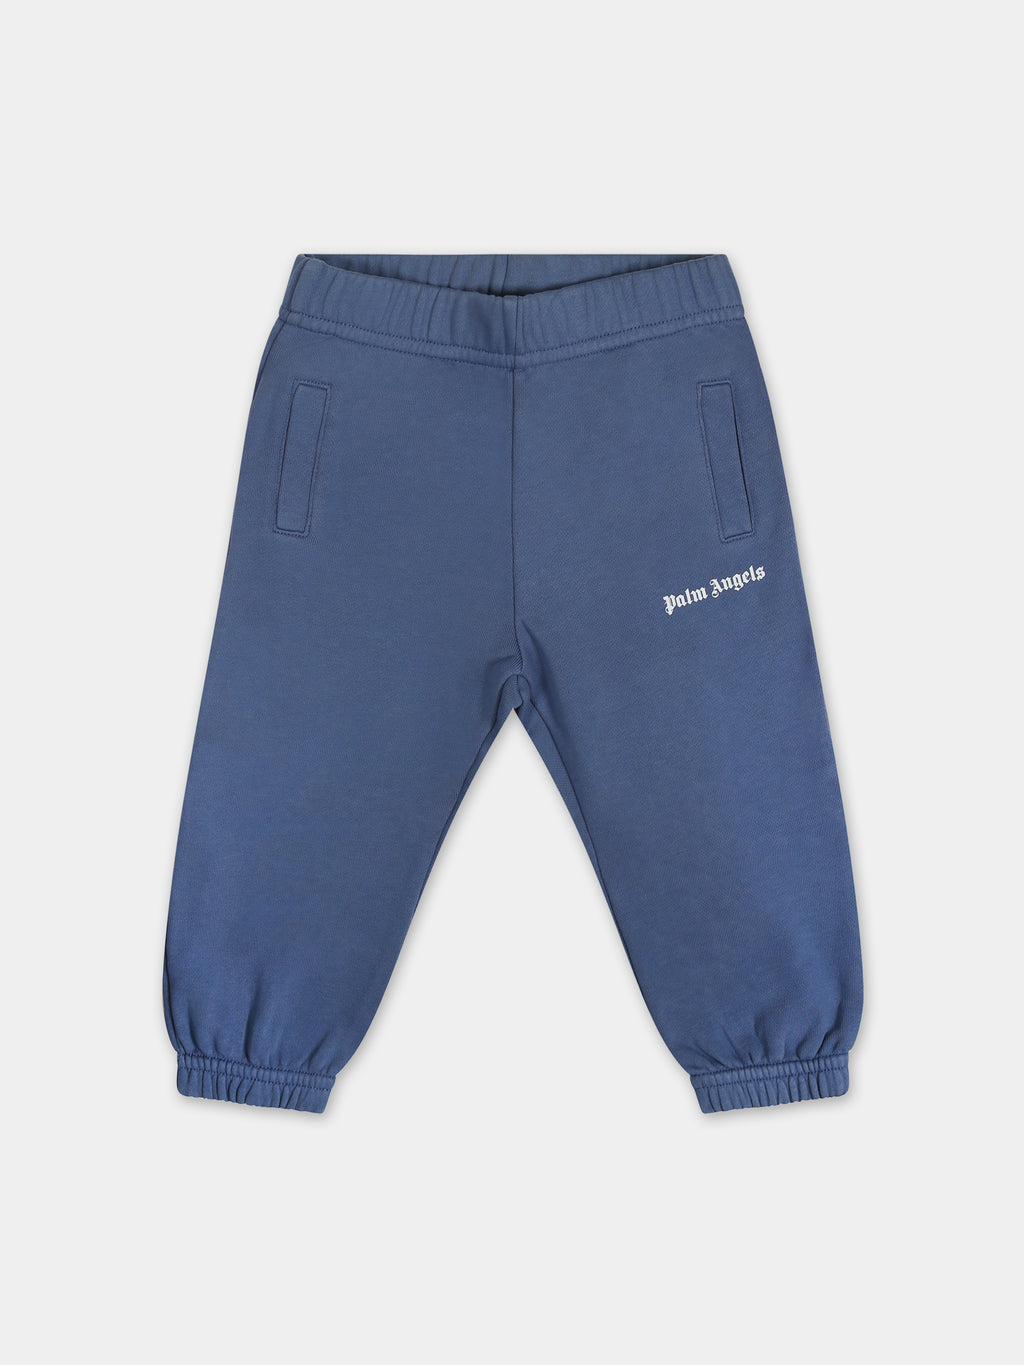 Pantalon bleu pour bébé garçon avec logo